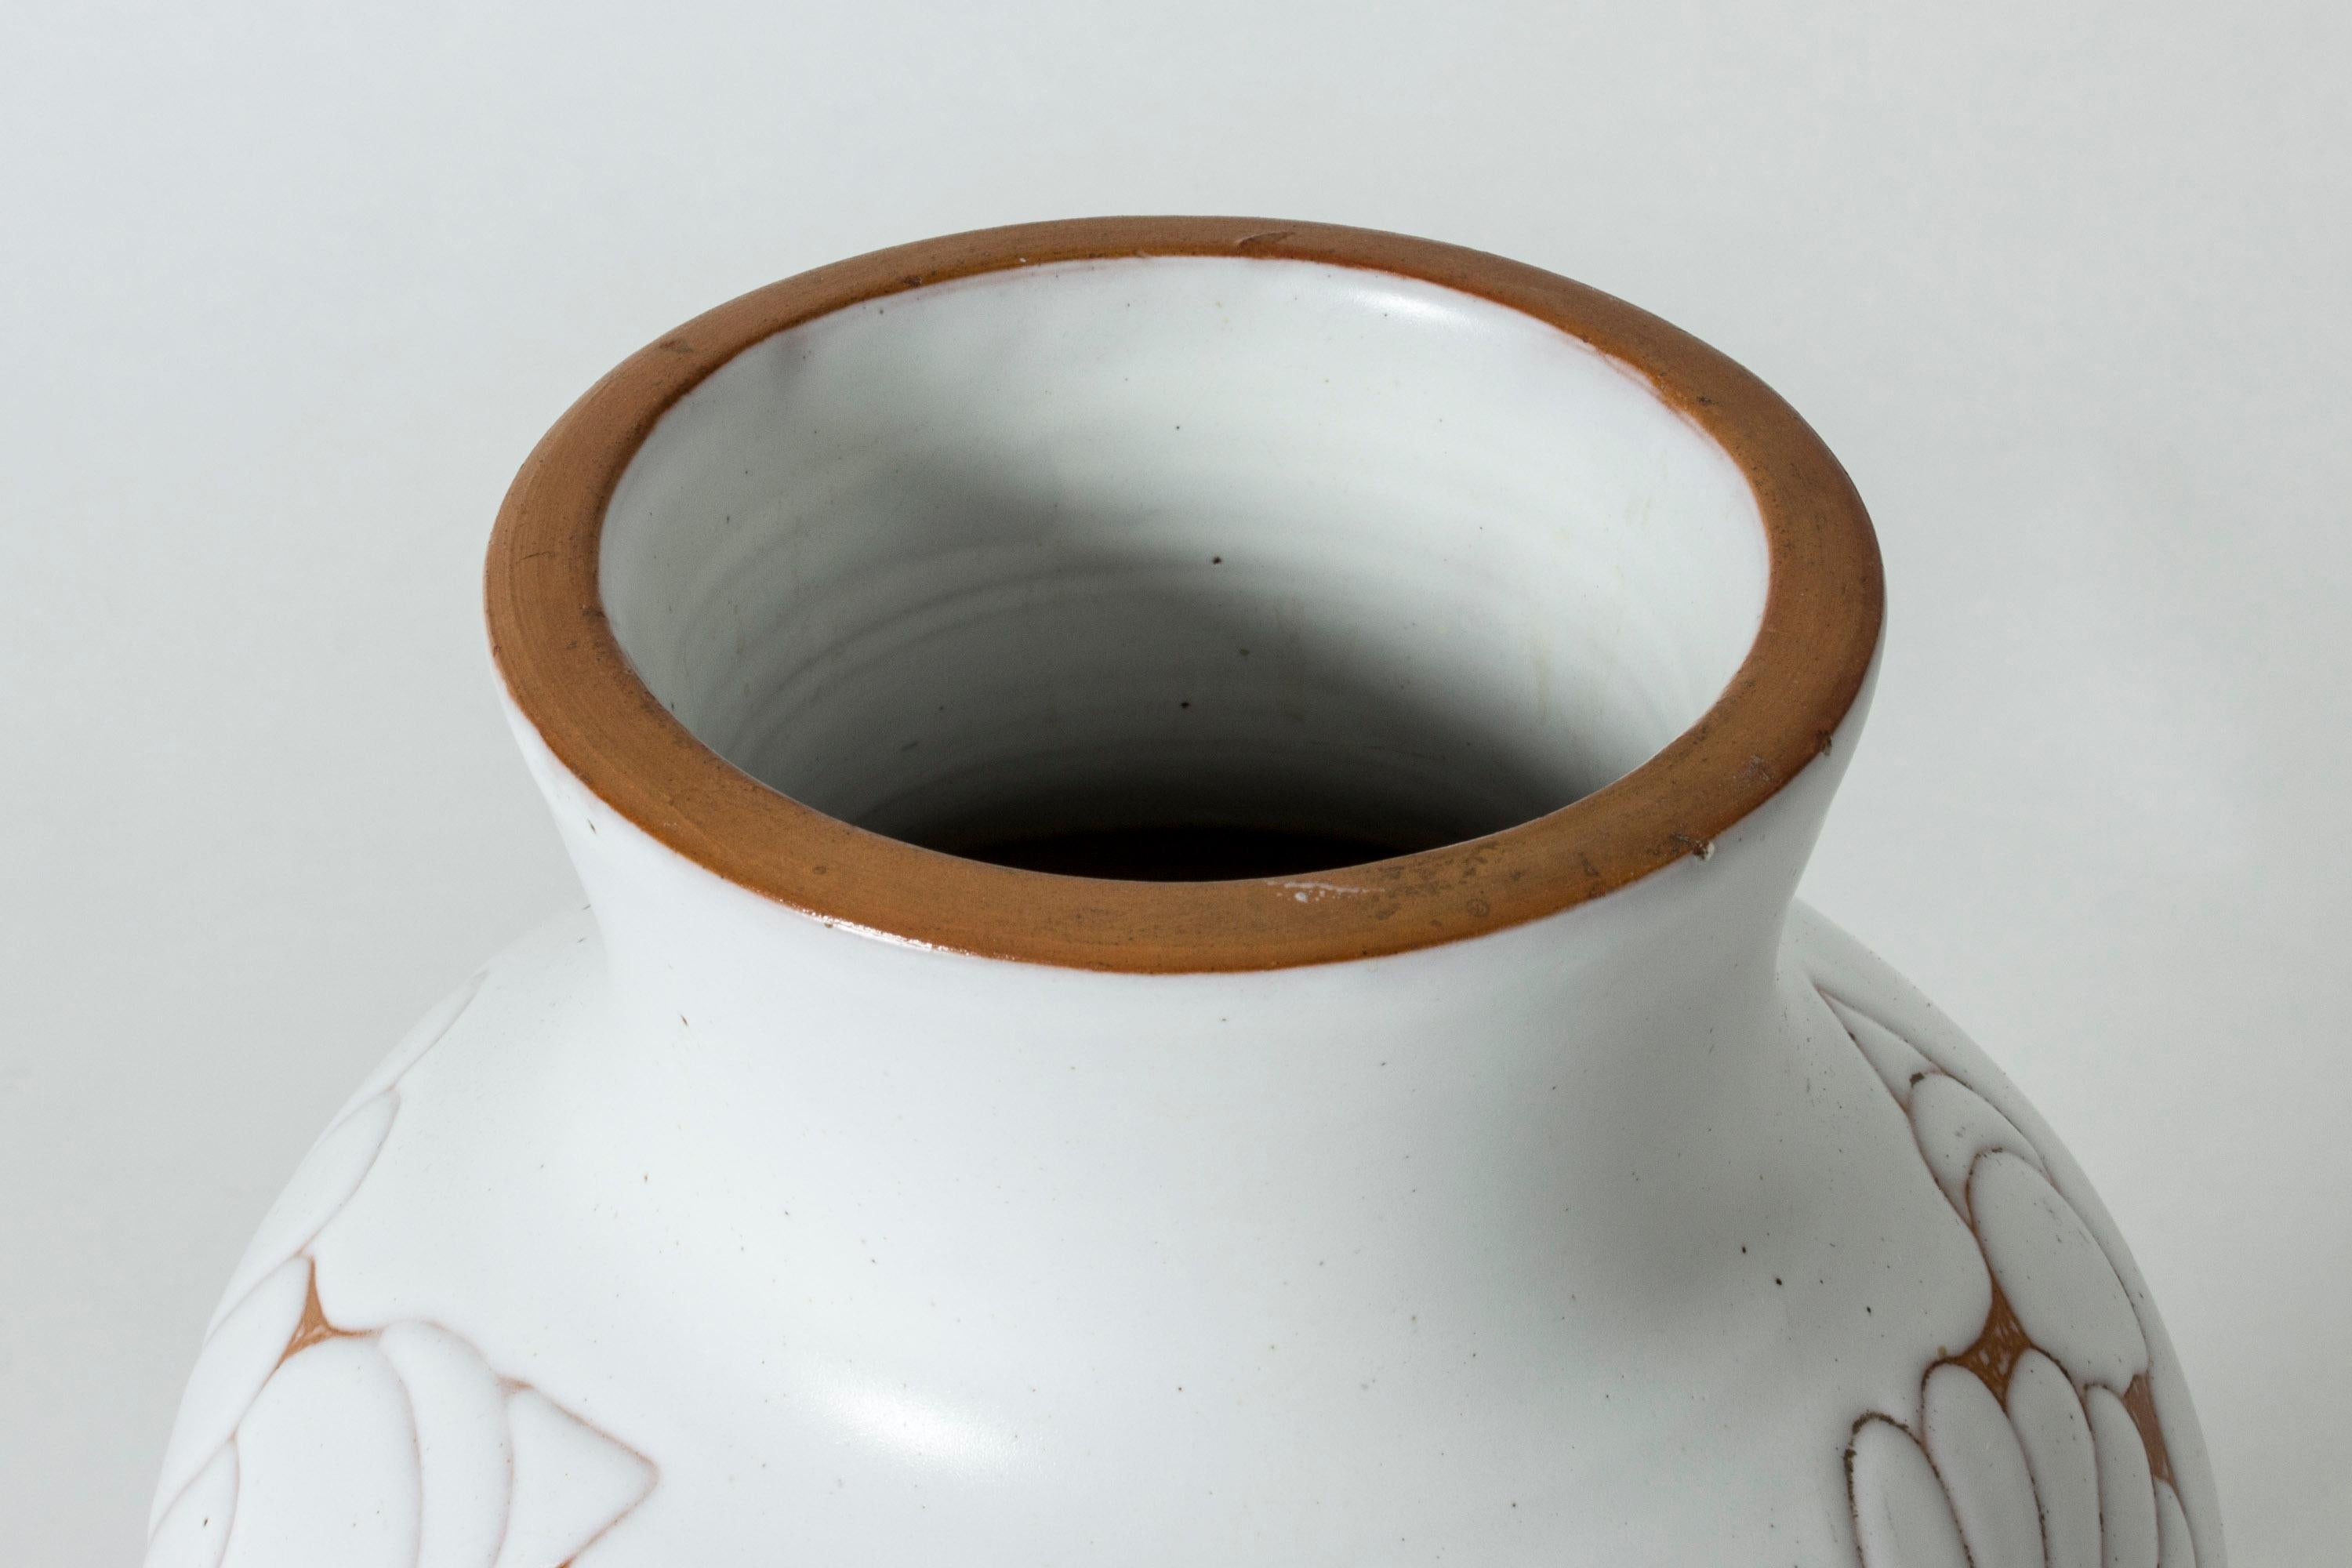 Large Swedish ceramic earthenware vase by Anna-Lisa Thomson for Upsala-Ekeby 2